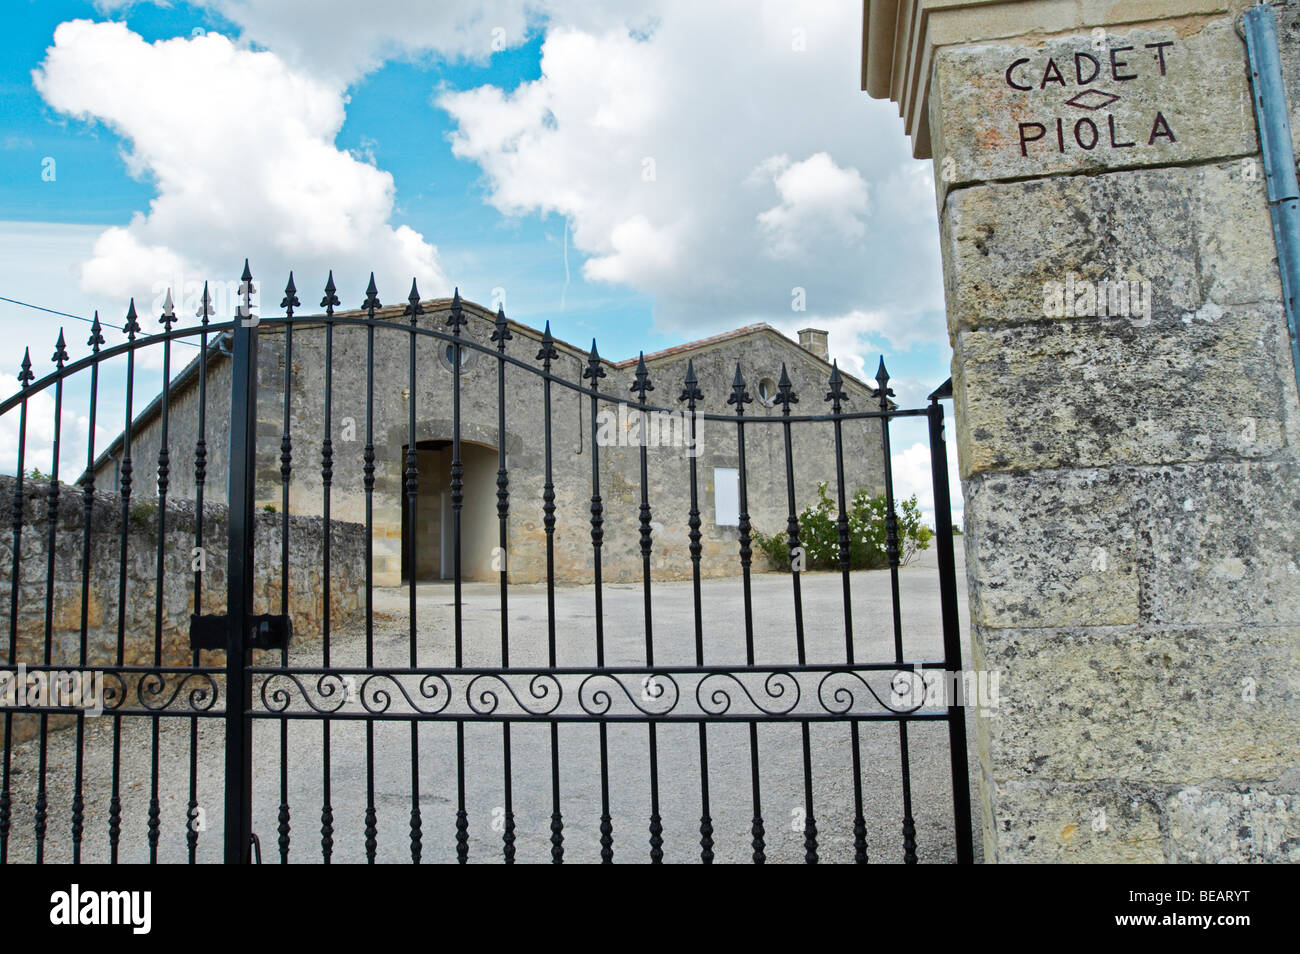 gate chateau cadet piola saint emilion bordeaux france Stock Photo